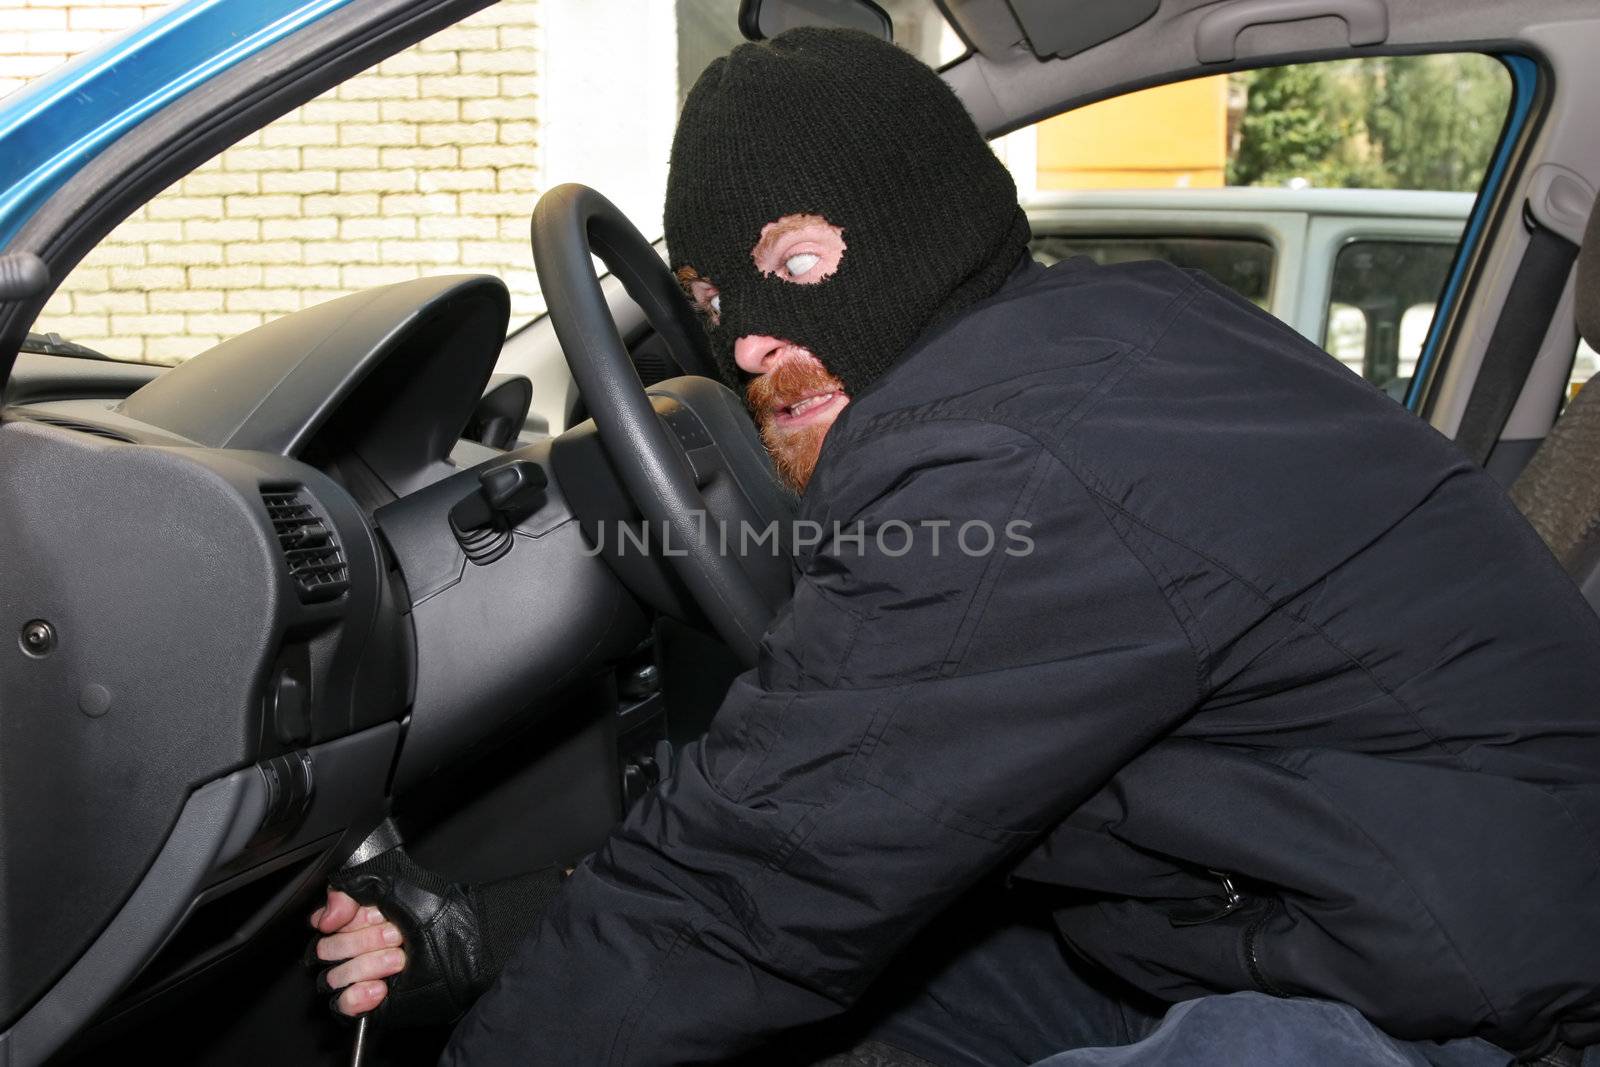 burglar wearing a mask (balaclava), details car burglary inside